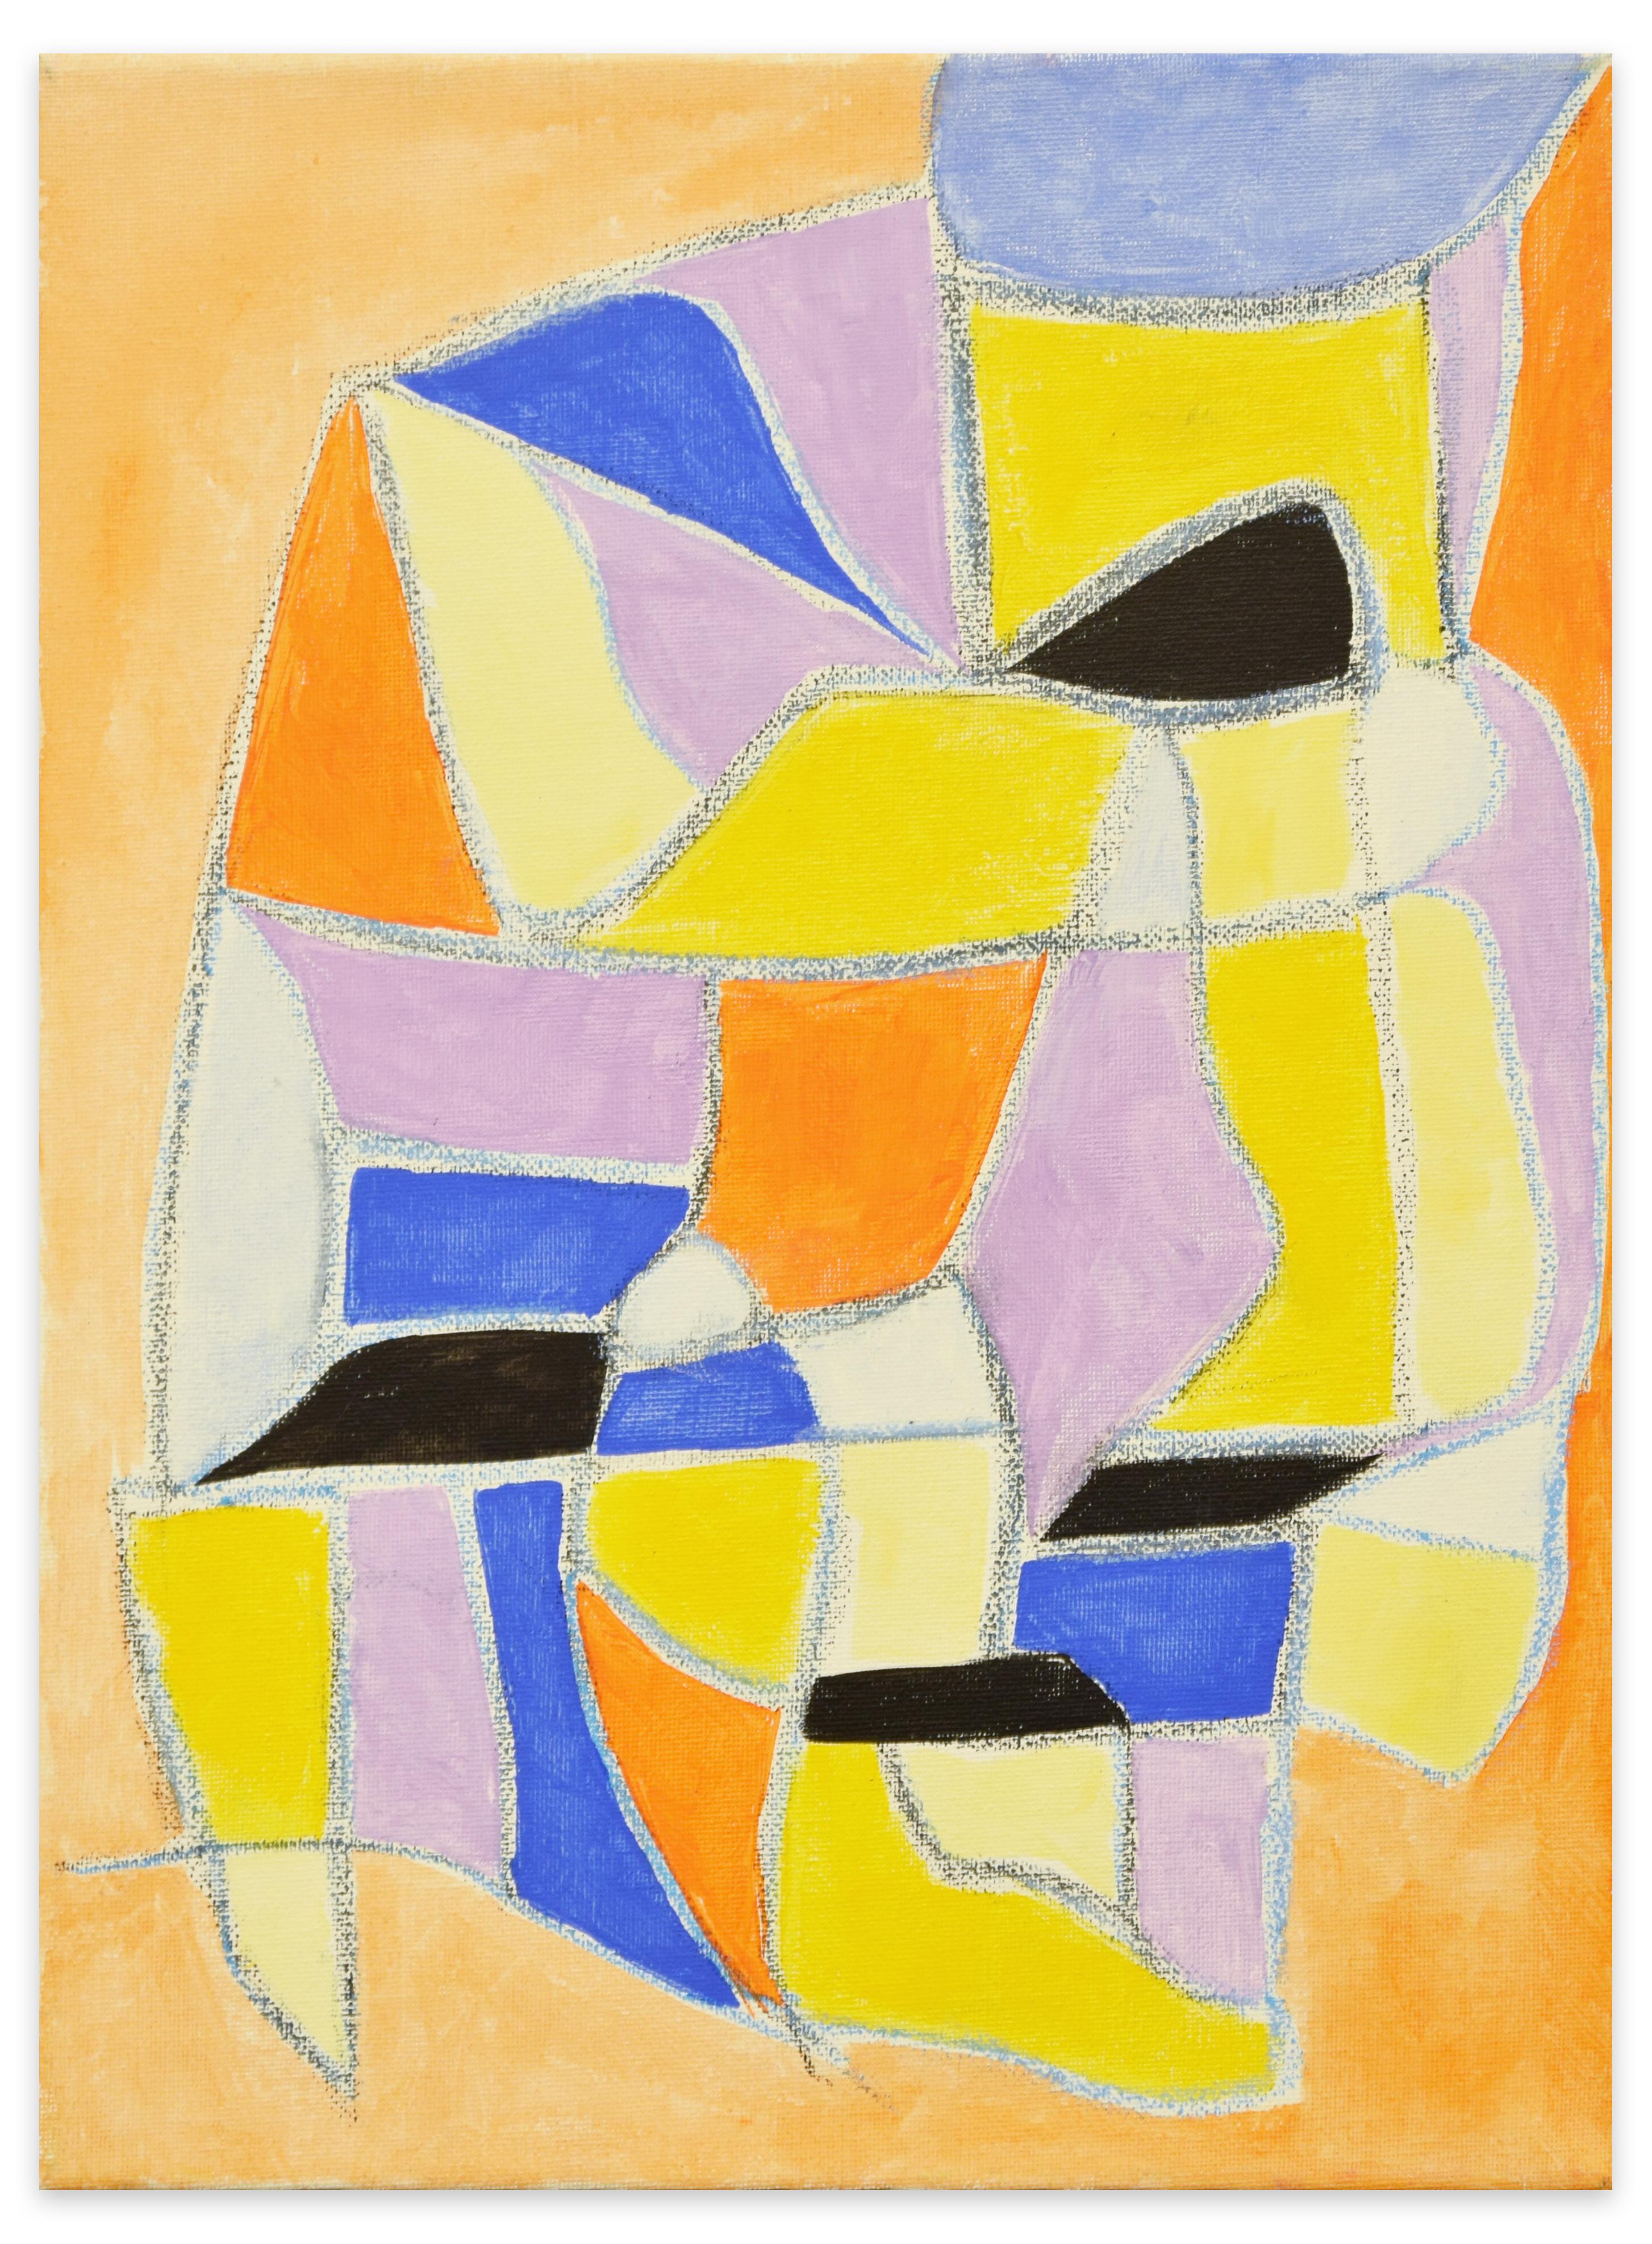 Orange Composition ist ein Original Öl auf Leinwand von Giorgio Lo Fermo aus dem Jahr 2019

Auf der Rückseite vom Künstler handsigniert und datiert. 

Das Kunstwerk stellt eine abstrakte Komposition mit verschiedenen Formen in den Farben Orange und